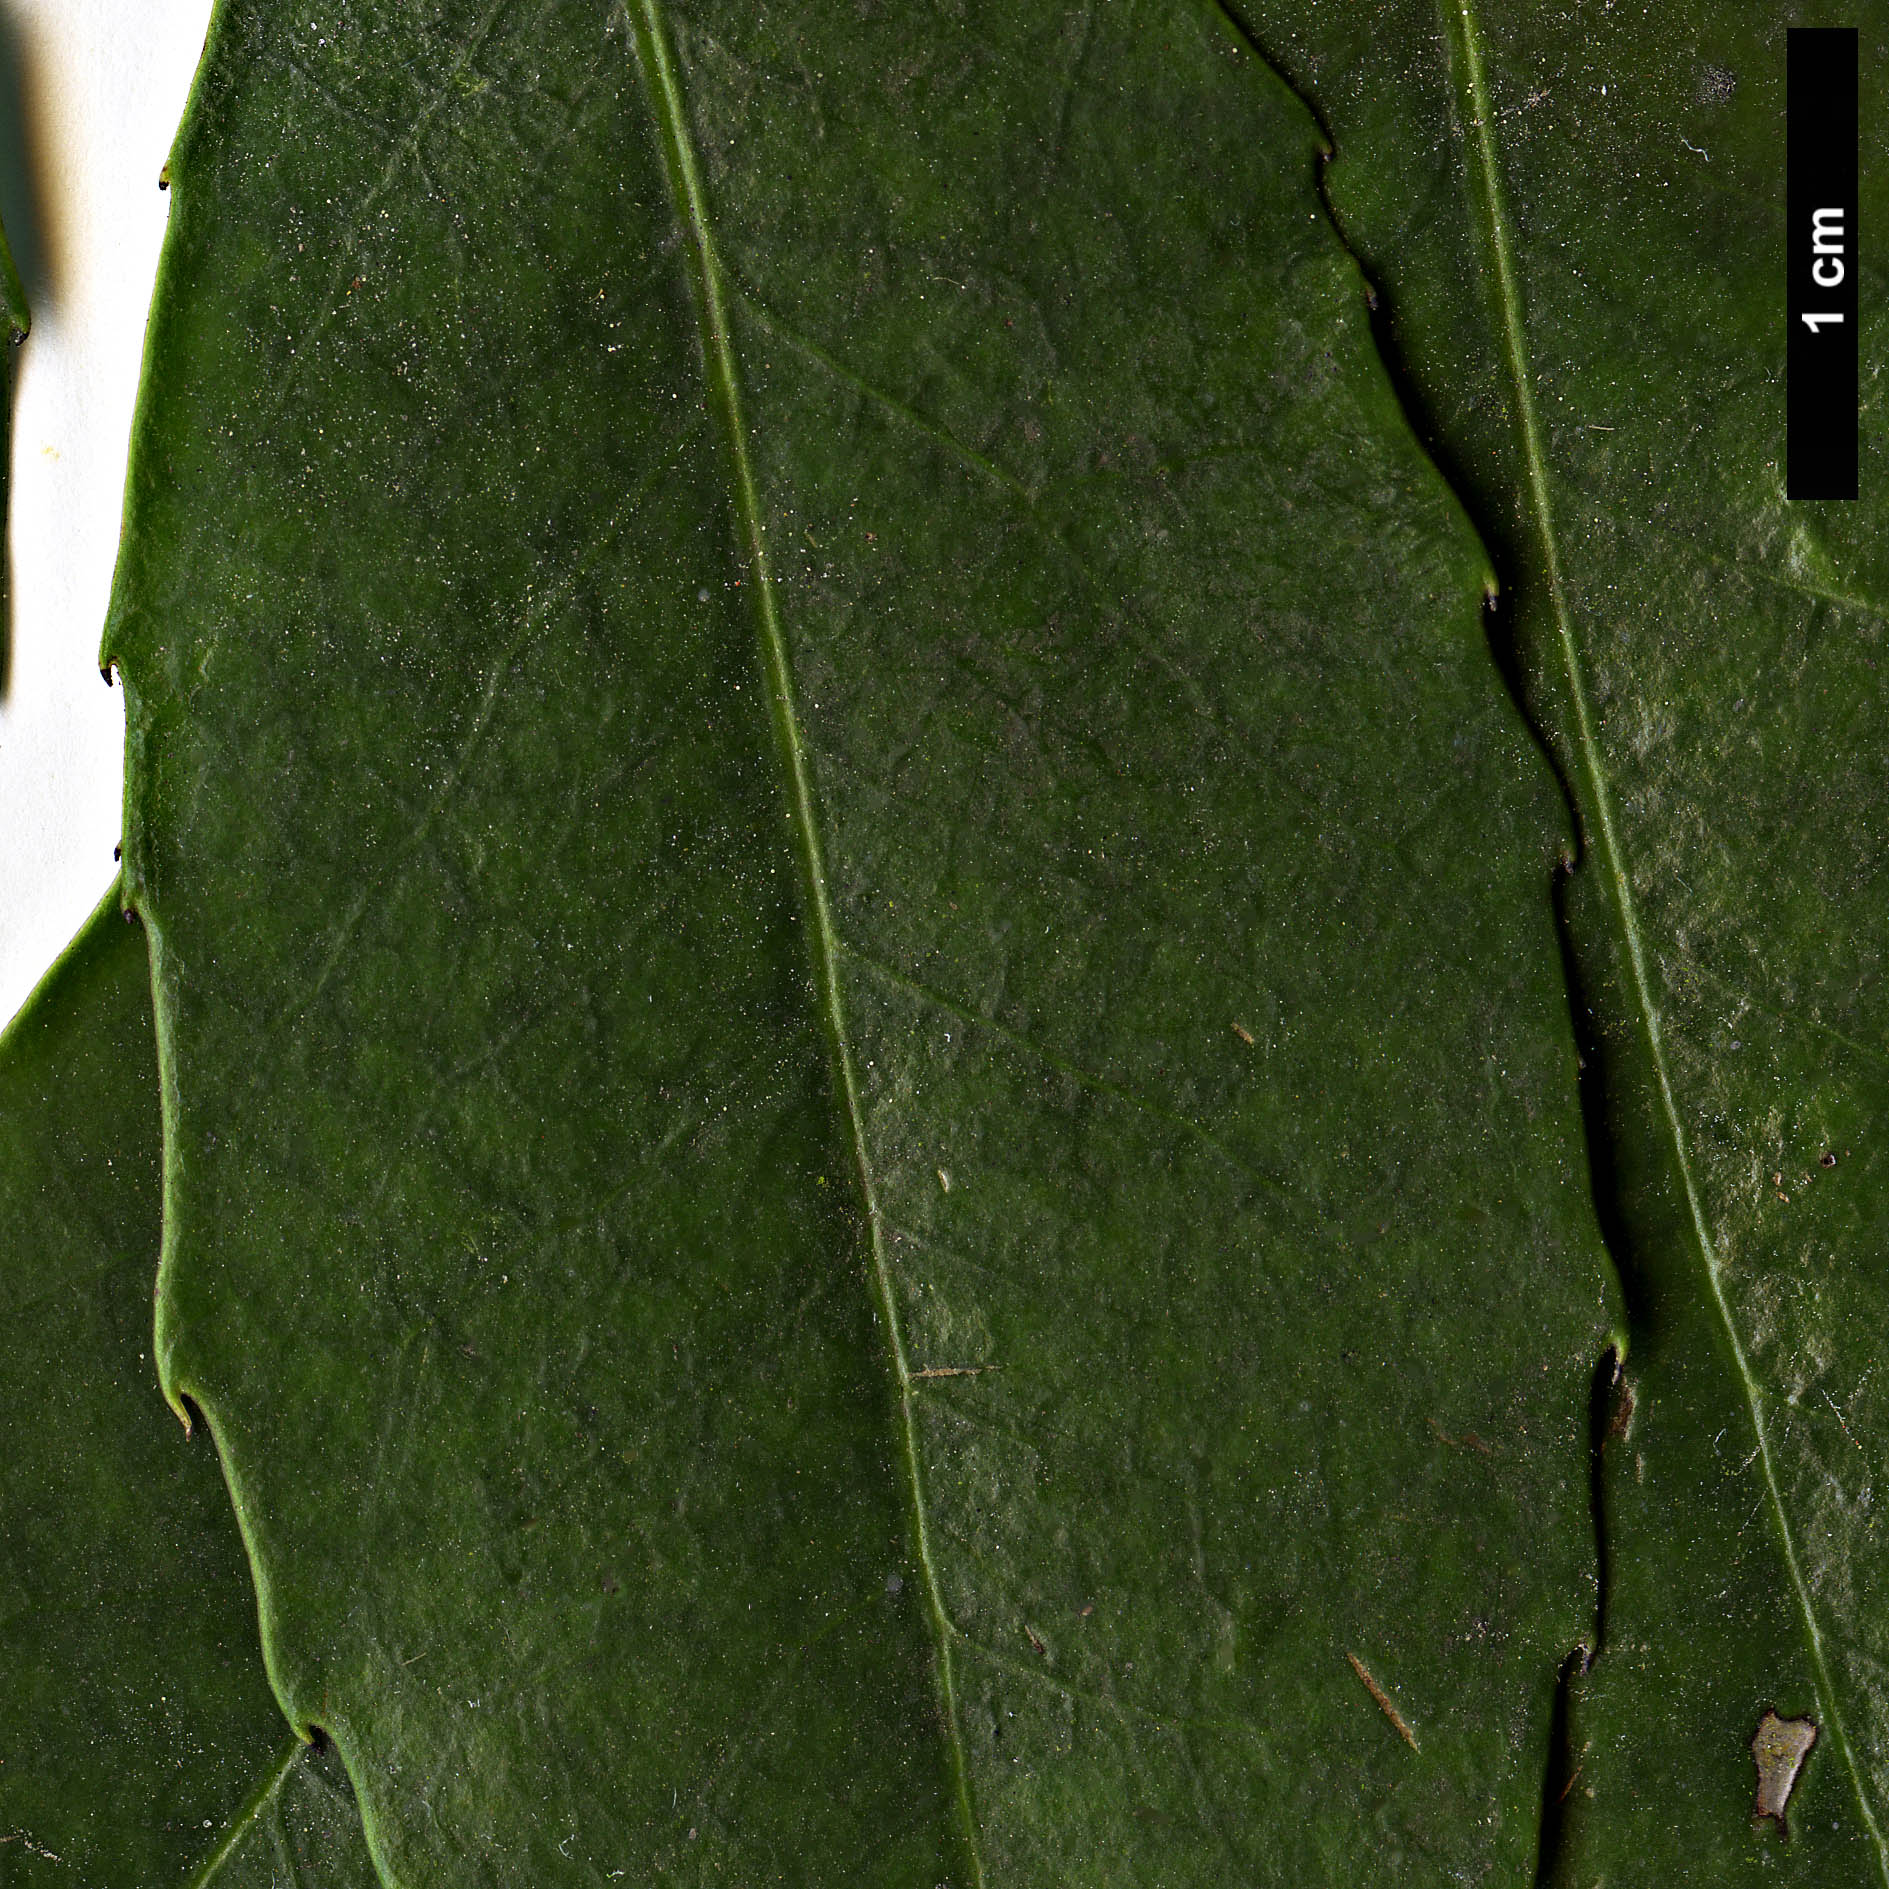 High resolution image: Family: Aquifoliaceae - Genus: Ilex - Taxon: corallina